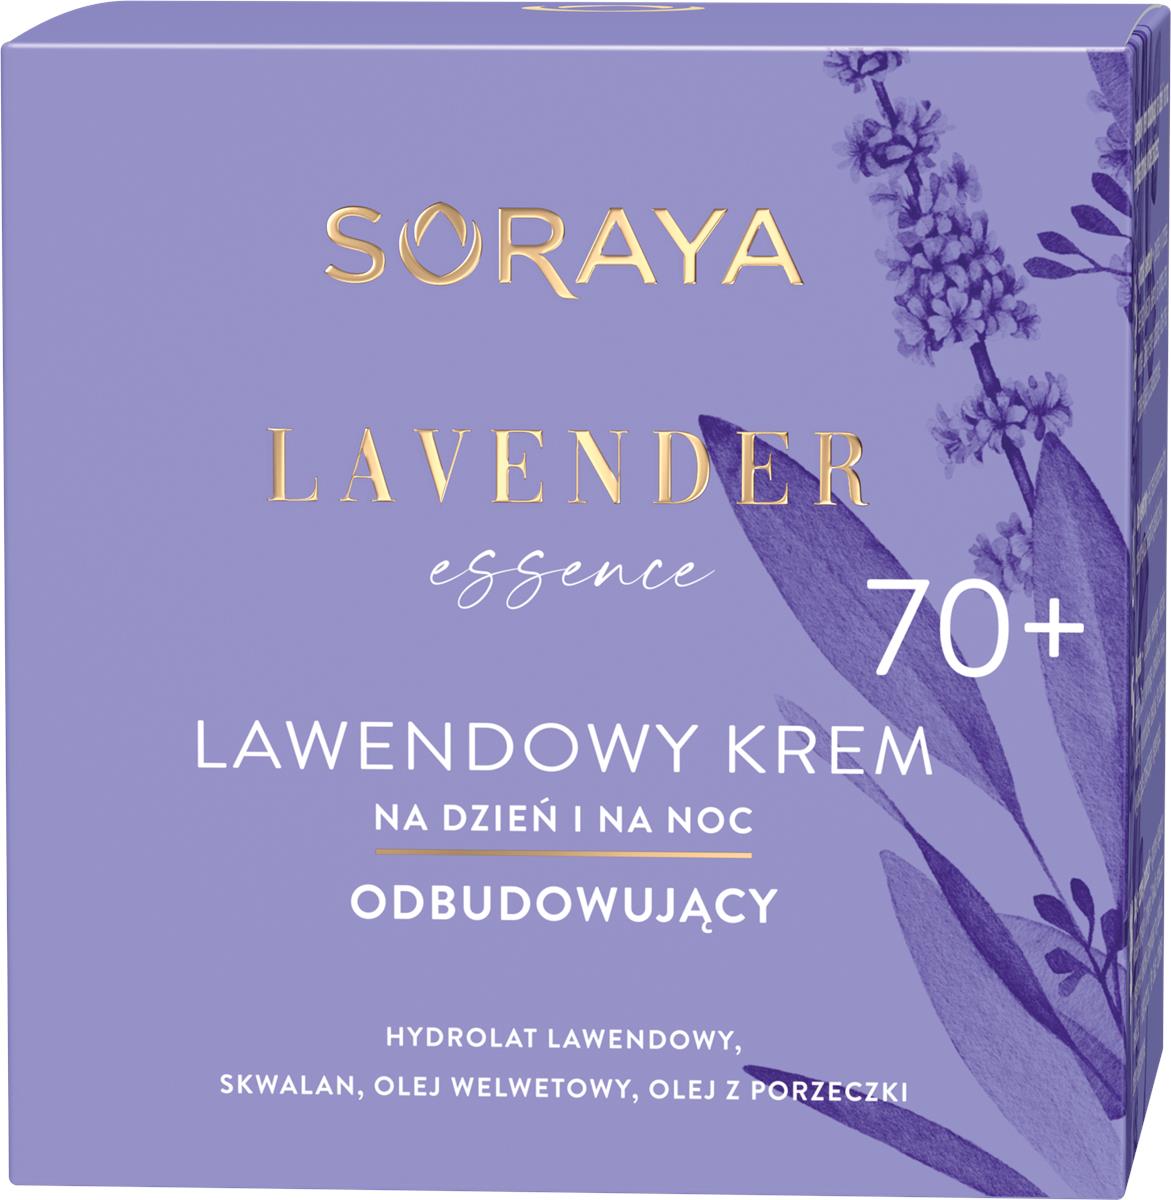 Soraya Lavender Essence 70+ lawendowy krem odbudowujący na dzień i na noc 50ml 109313-uniw